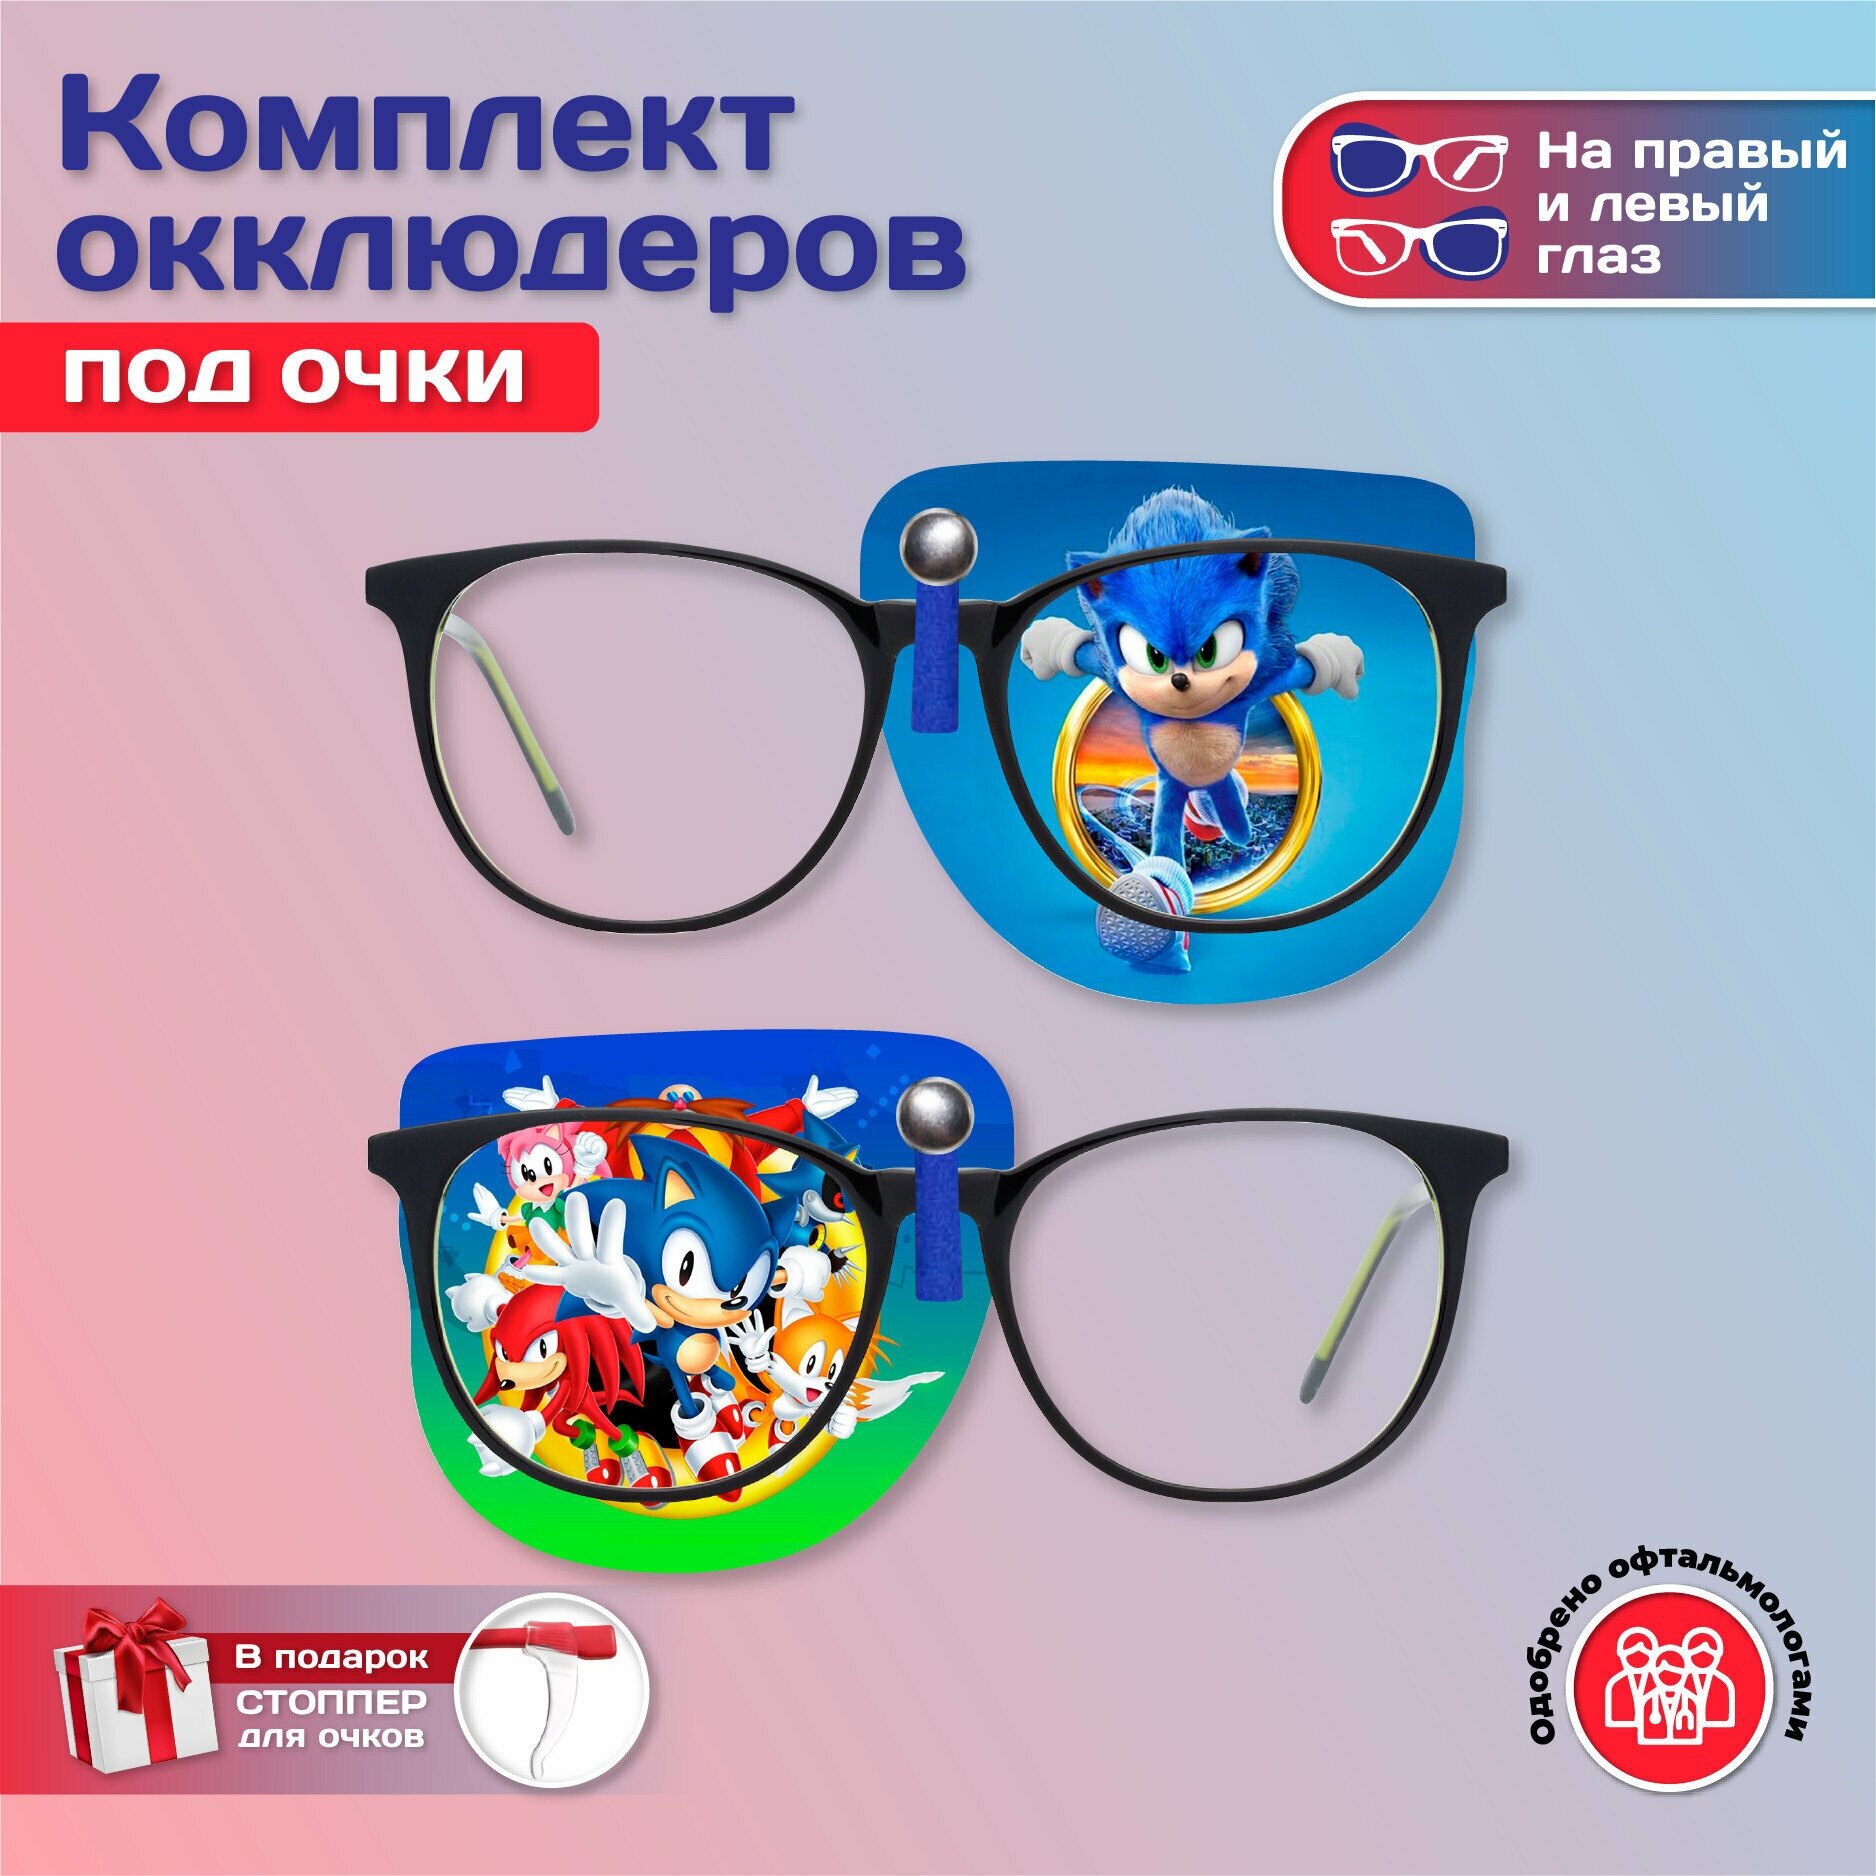 Комплект окклюдеров под очки "Sonic" на левый и правый глаз